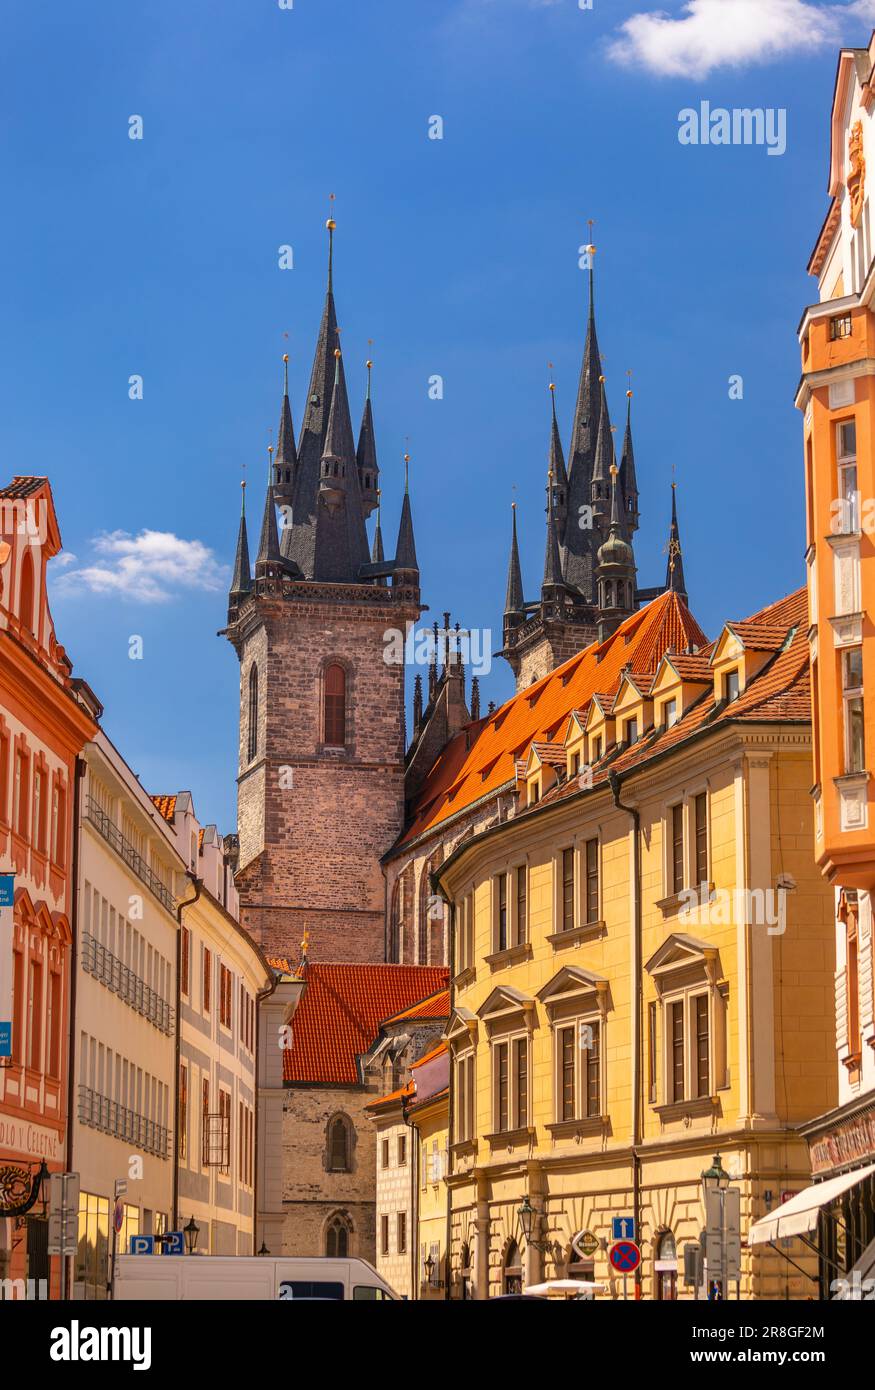 PRAGA, REPÚBLICA CHECA, EUROPA - Las torres de la Iglesia de Nuestra Señora antes de que Tyn se eleven por encima de otros edificios en Stare Mesto. Foto de stock